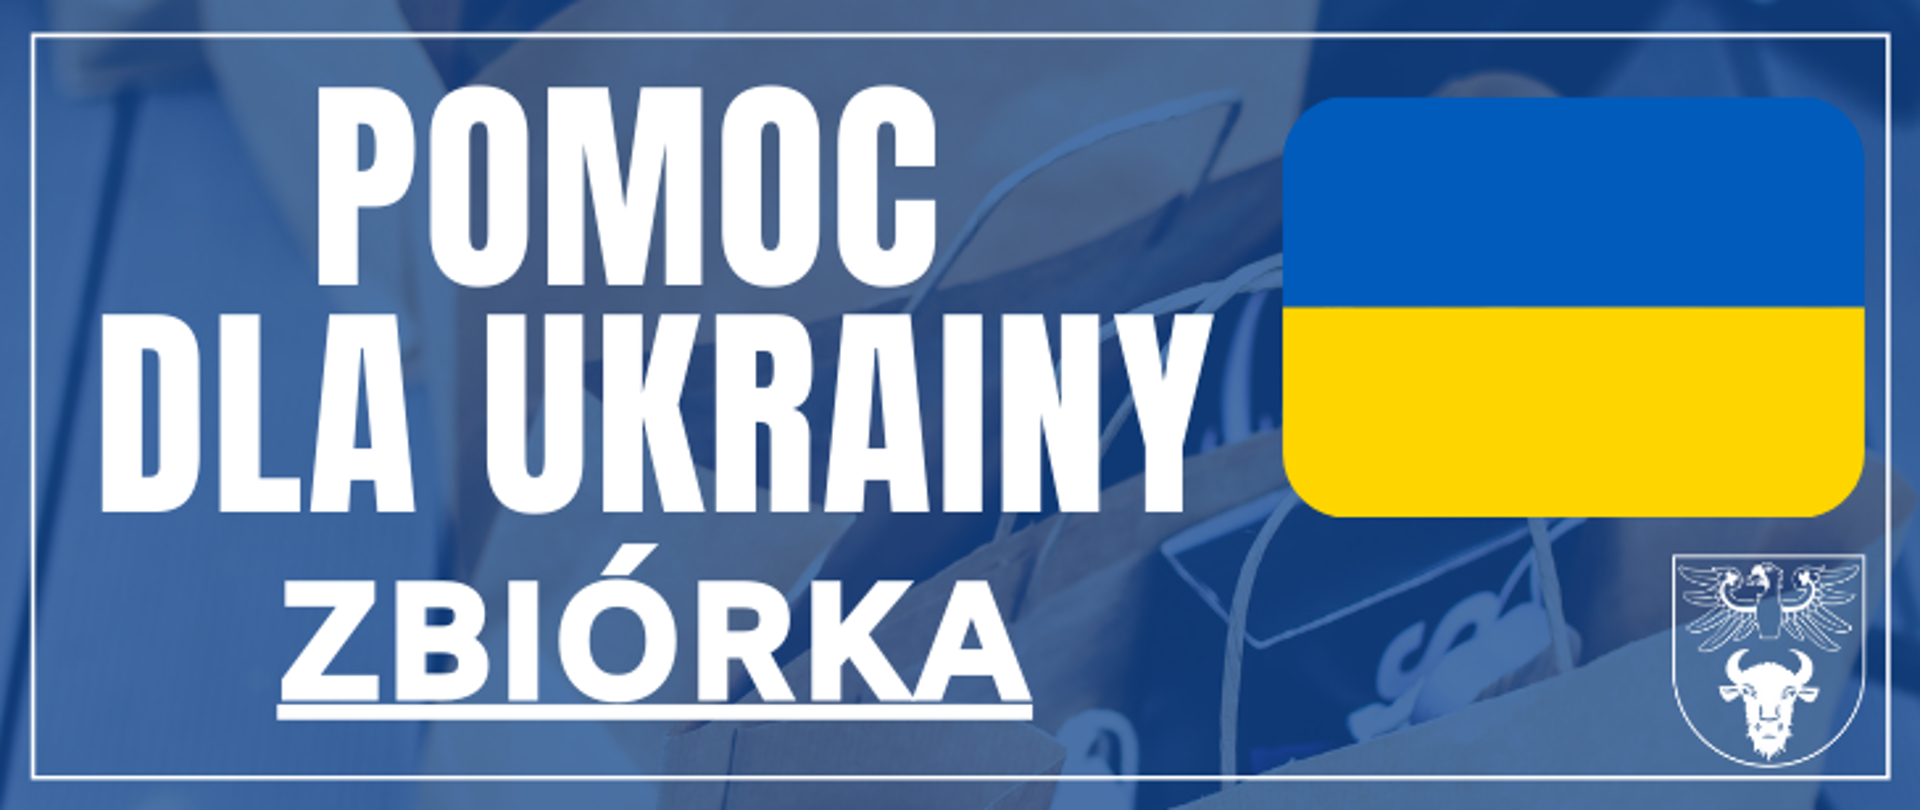 na zdjęciu znajduje się flaga ukrainy logo powiatu i napis "POMOC DLA UKRAINY ZBIÓRKA"